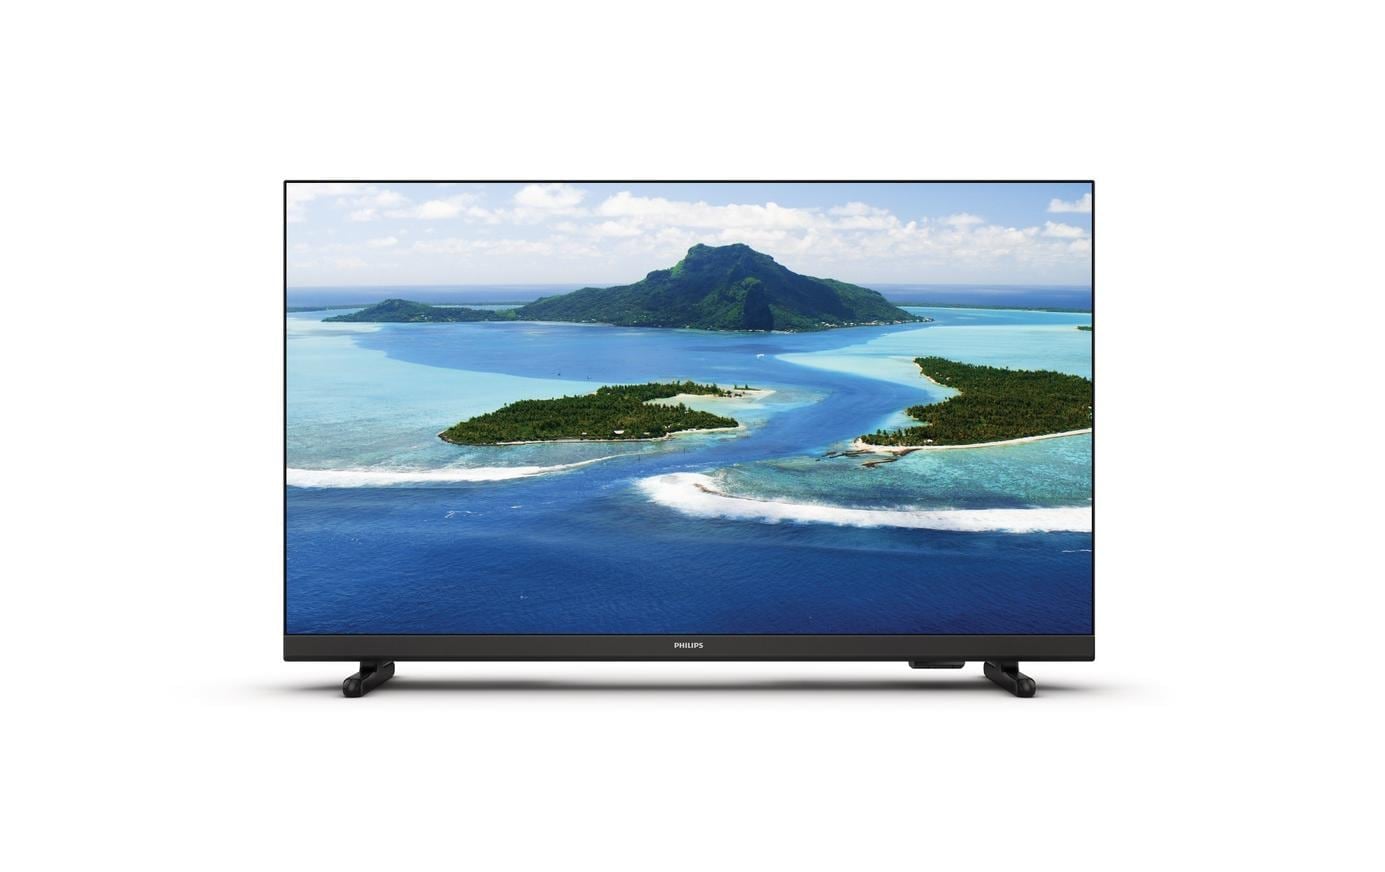 LCD-LED Fernseher »24PHS5507/12, 24 LED-«, 60 cm/24 Zoll, WXGA